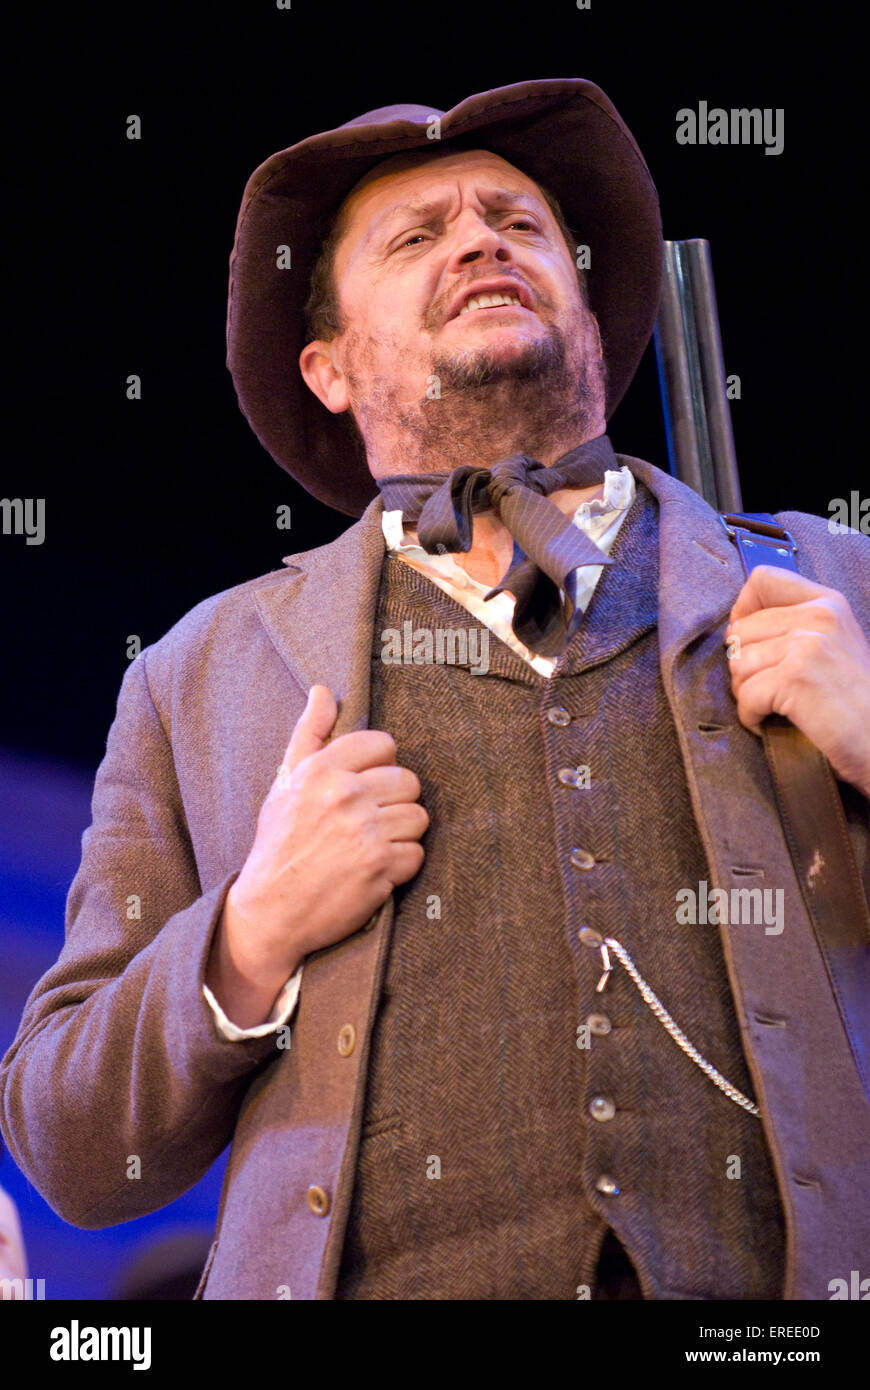 Craige Els als Jud in "Oklahoma!" von Rogers und Hammerstein, Chichester Festival Theatre, Juni 2009. Regie: John Doyle. Stockfoto